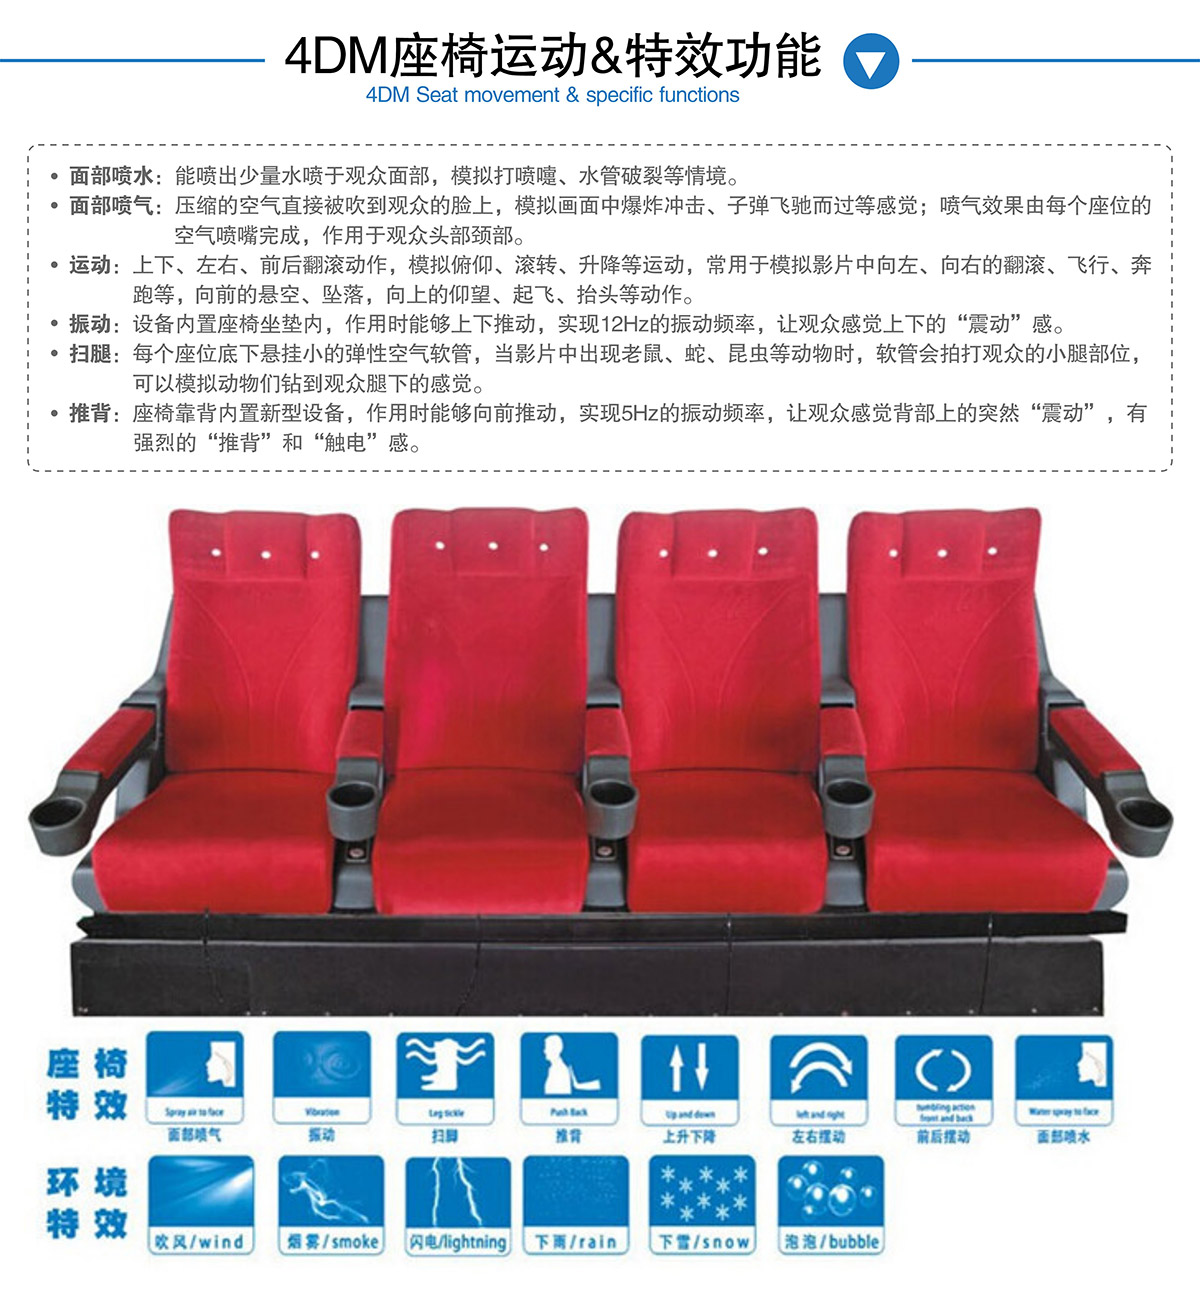 云南卓信智诚4DM座椅运动和特效功能.jpg